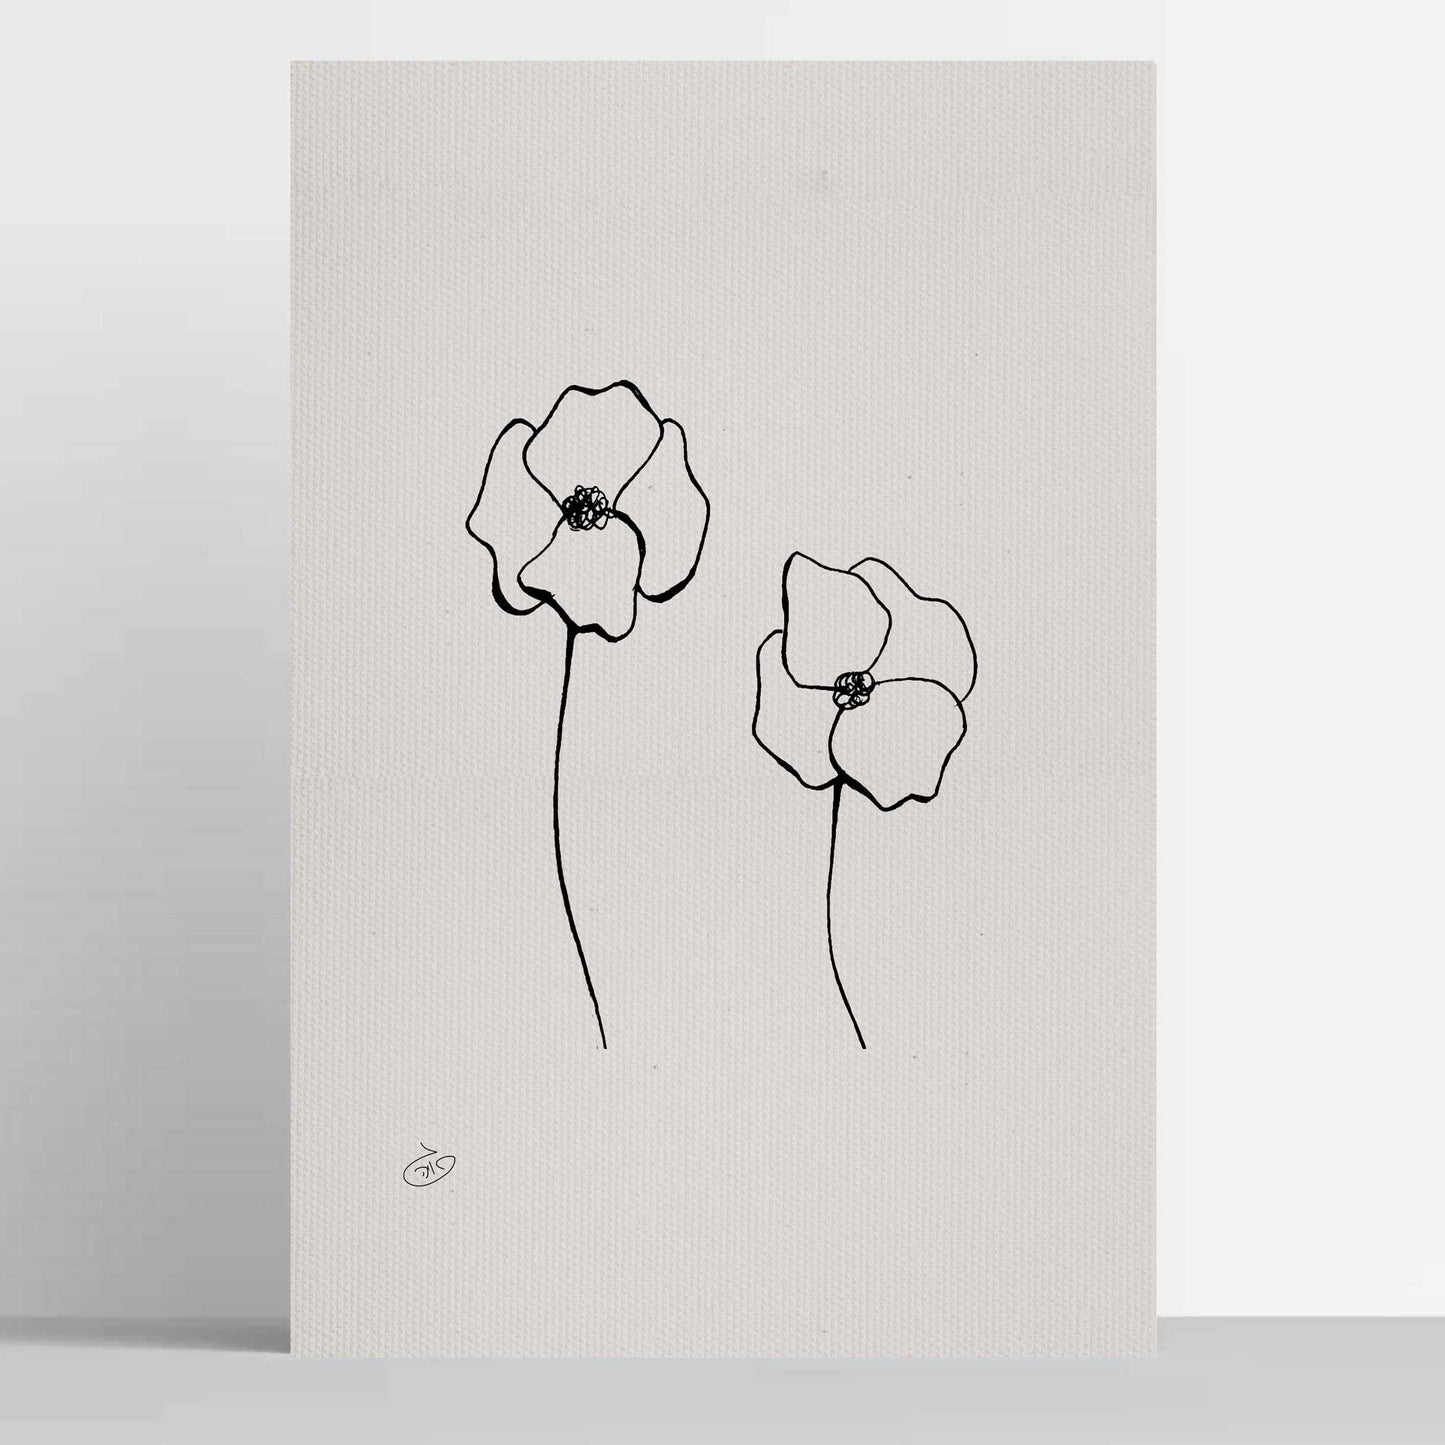 פוסטר One Line Flower - Poppy Poster ציור מקורי של גאיה המקדם את המודעות לאלימות בין בני זוג בכלל וכלפי נשים בפרט